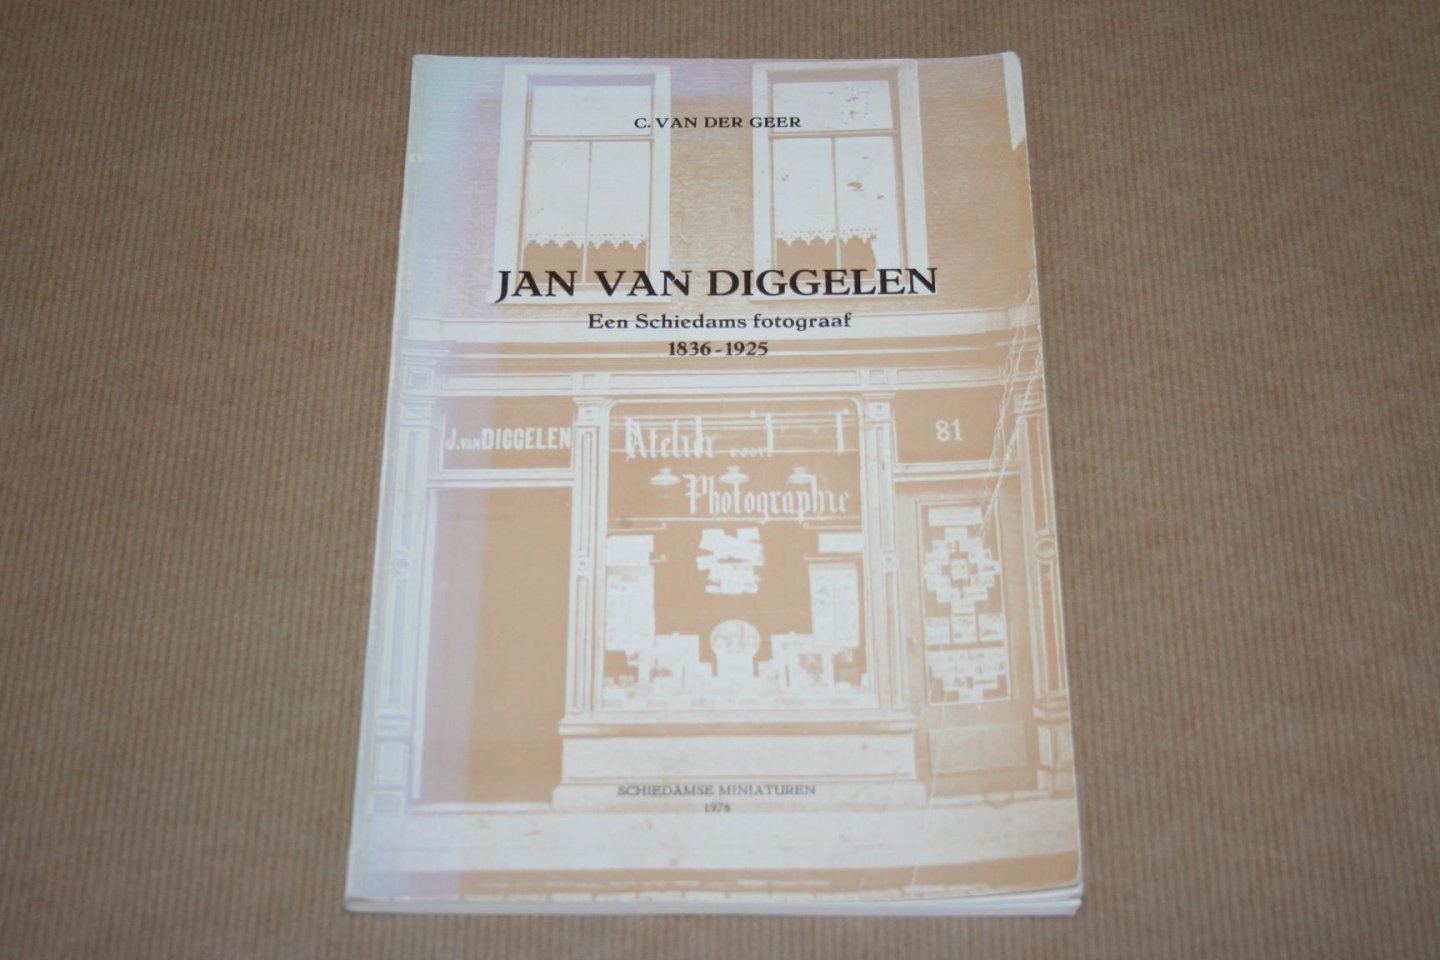 C. van der Greer - Jan van Diggelen --  Een Schiedams fotograaf 1836-1925